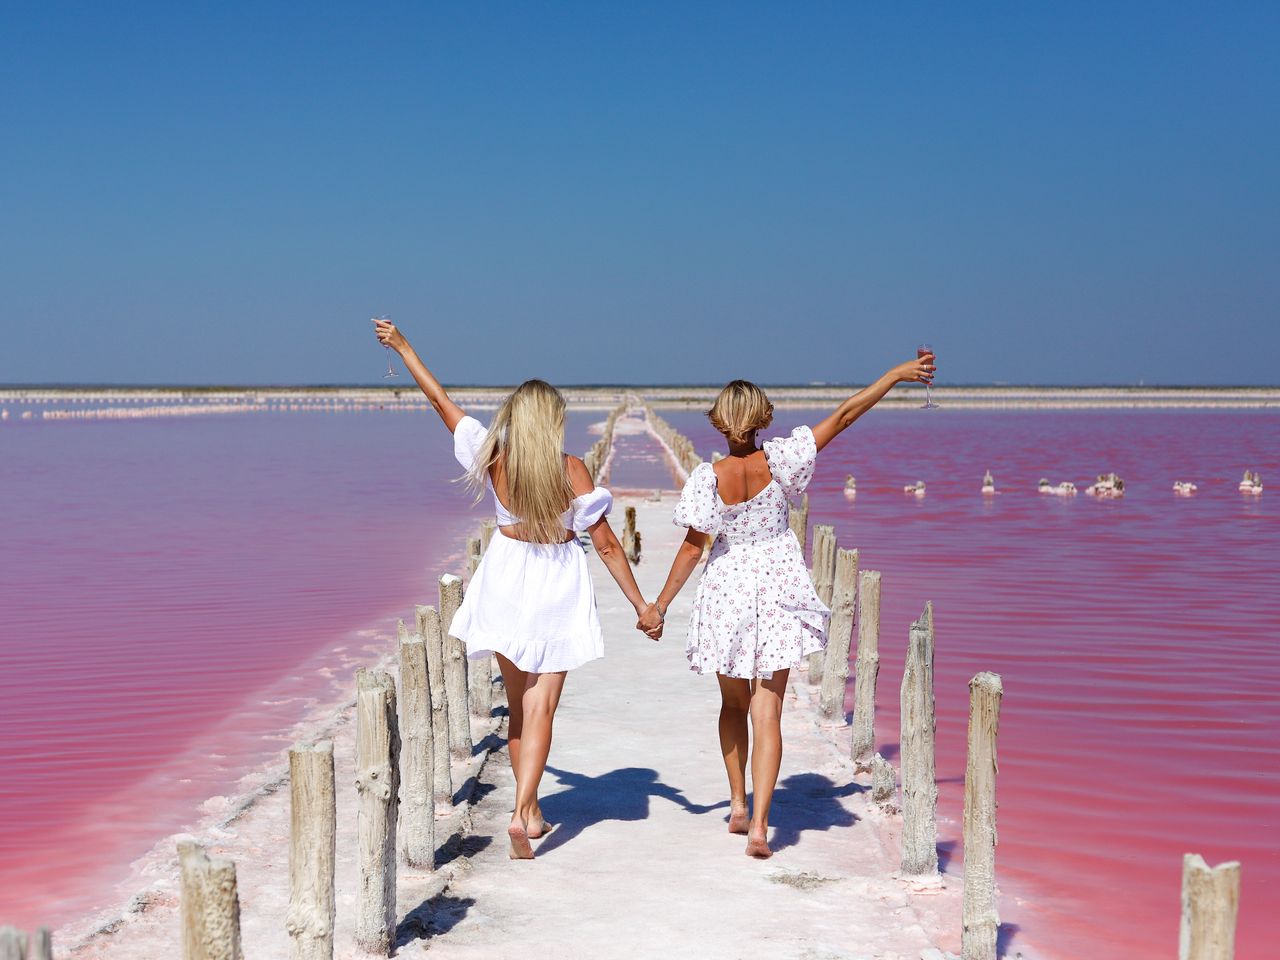 Миллион оттенков розового: озеро Сасык-Сиваш | Цена 5500₽, отзывы, описание экскурсии